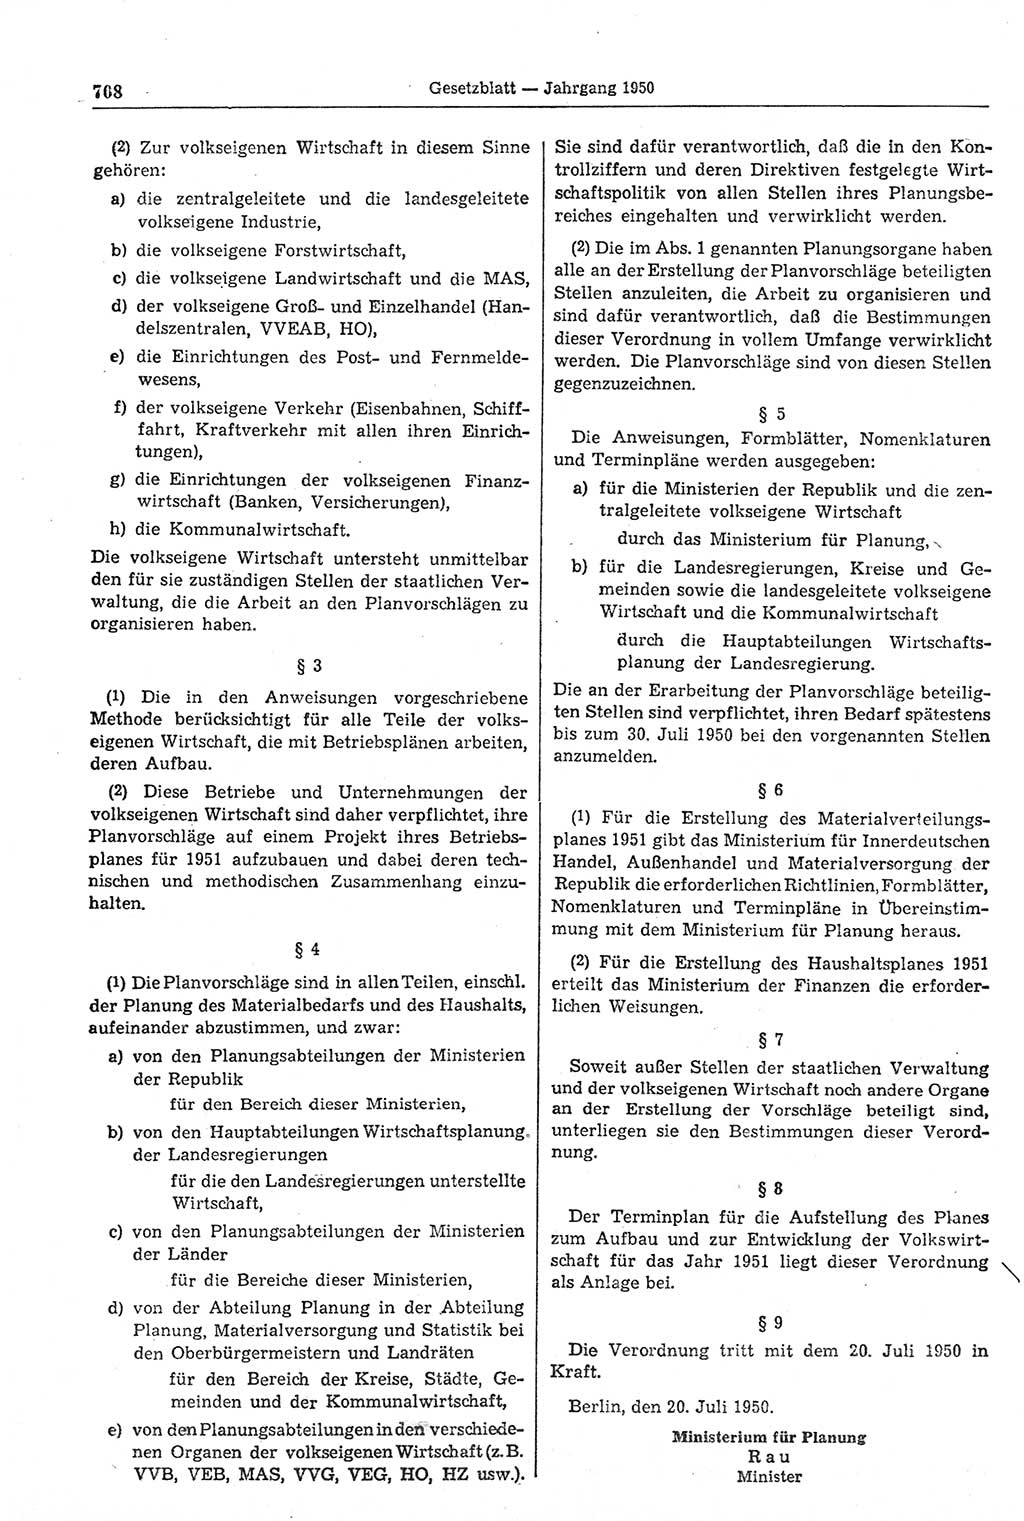 Gesetzblatt (GBl.) der Deutschen Demokratischen Republik (DDR) 1950, Seite 708 (GBl. DDR 1950, S. 708)